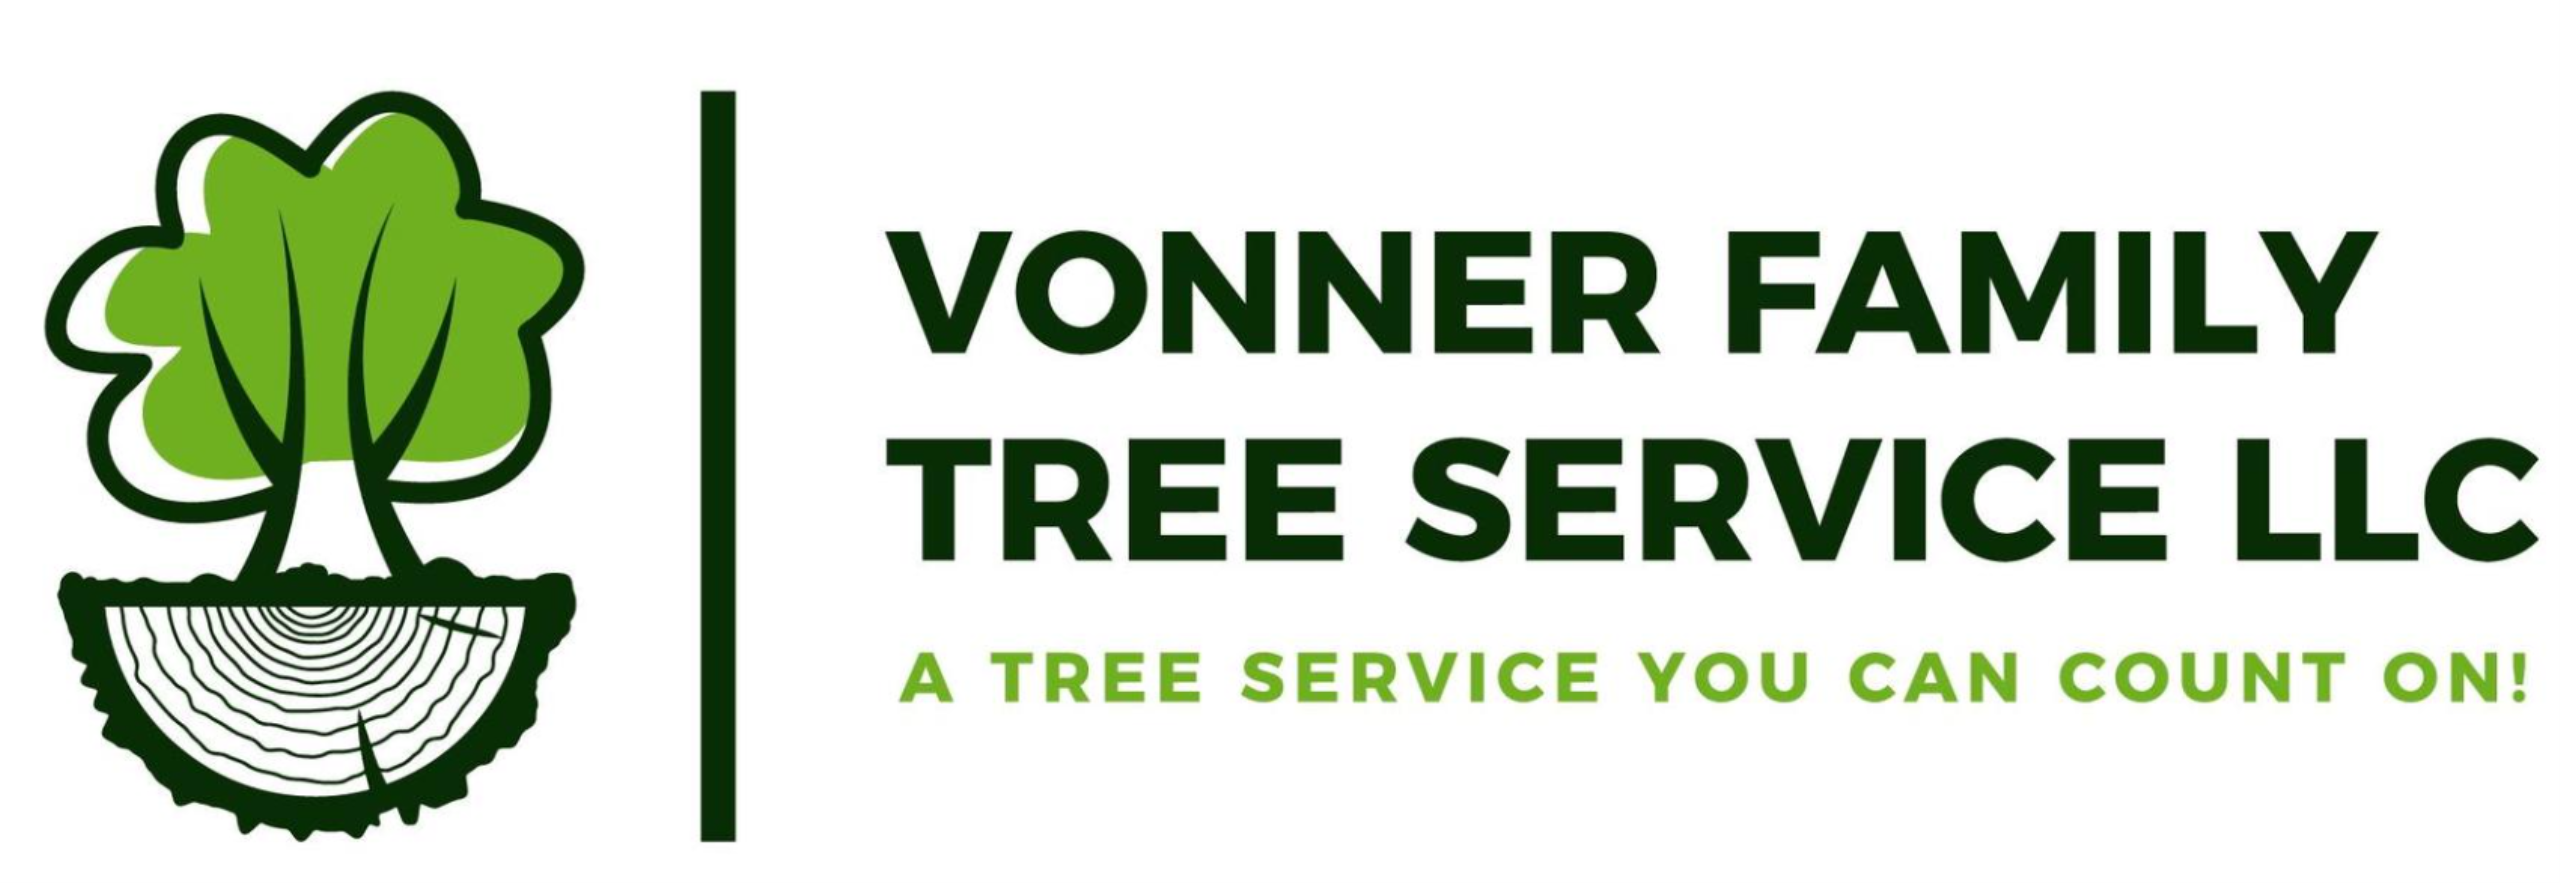 Vonner Family Tree Service LLC Logo